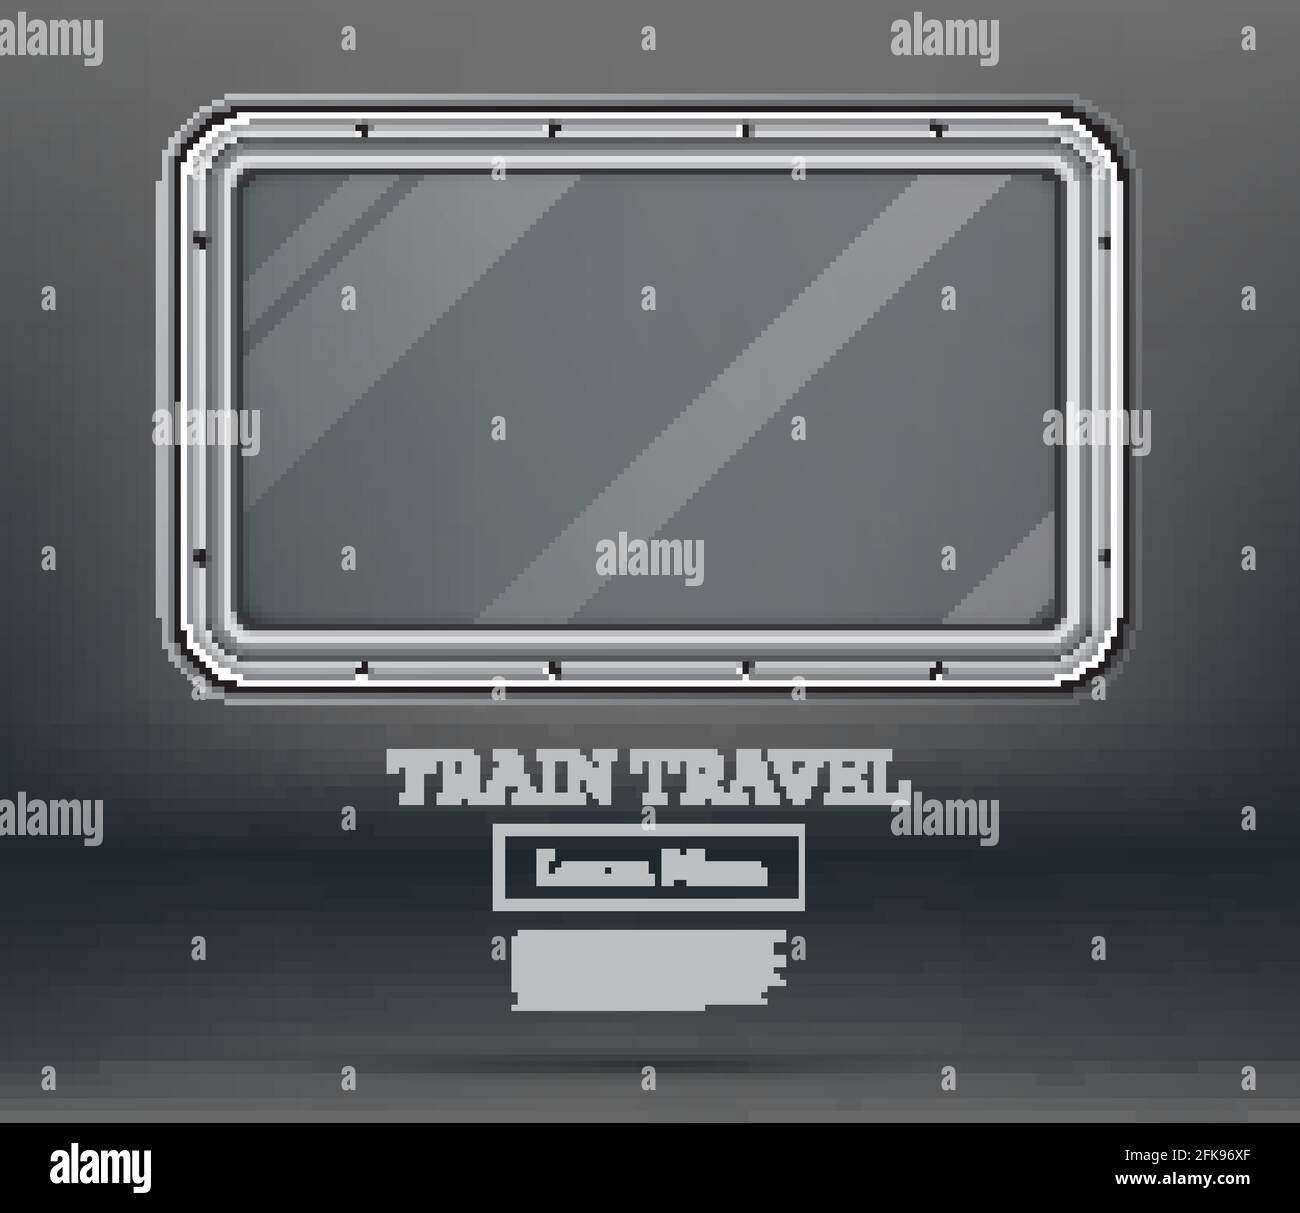 Zugfahrt. Tourismuskonzept. Leeres Zugfenster auf grauem Hintergrund. Blick vom Inneren des Zuges. Vektorgrafik. Zugelement. Stock Vektor